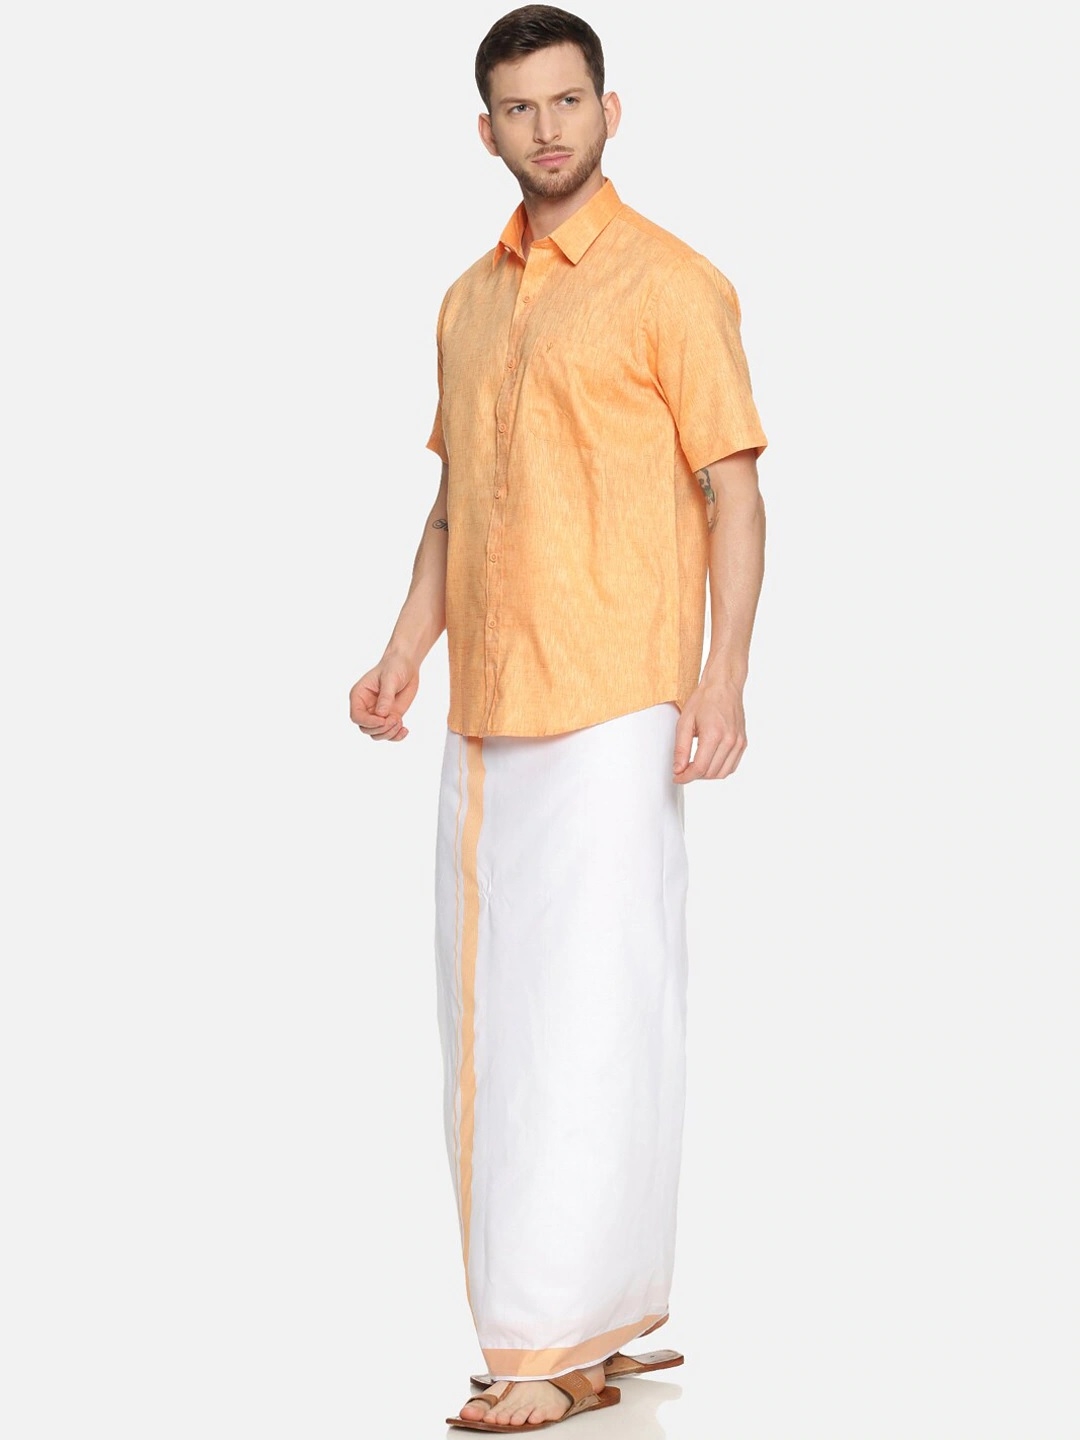 RAMRAJ COTTON Men Shirt and Dhoti Clothing Set